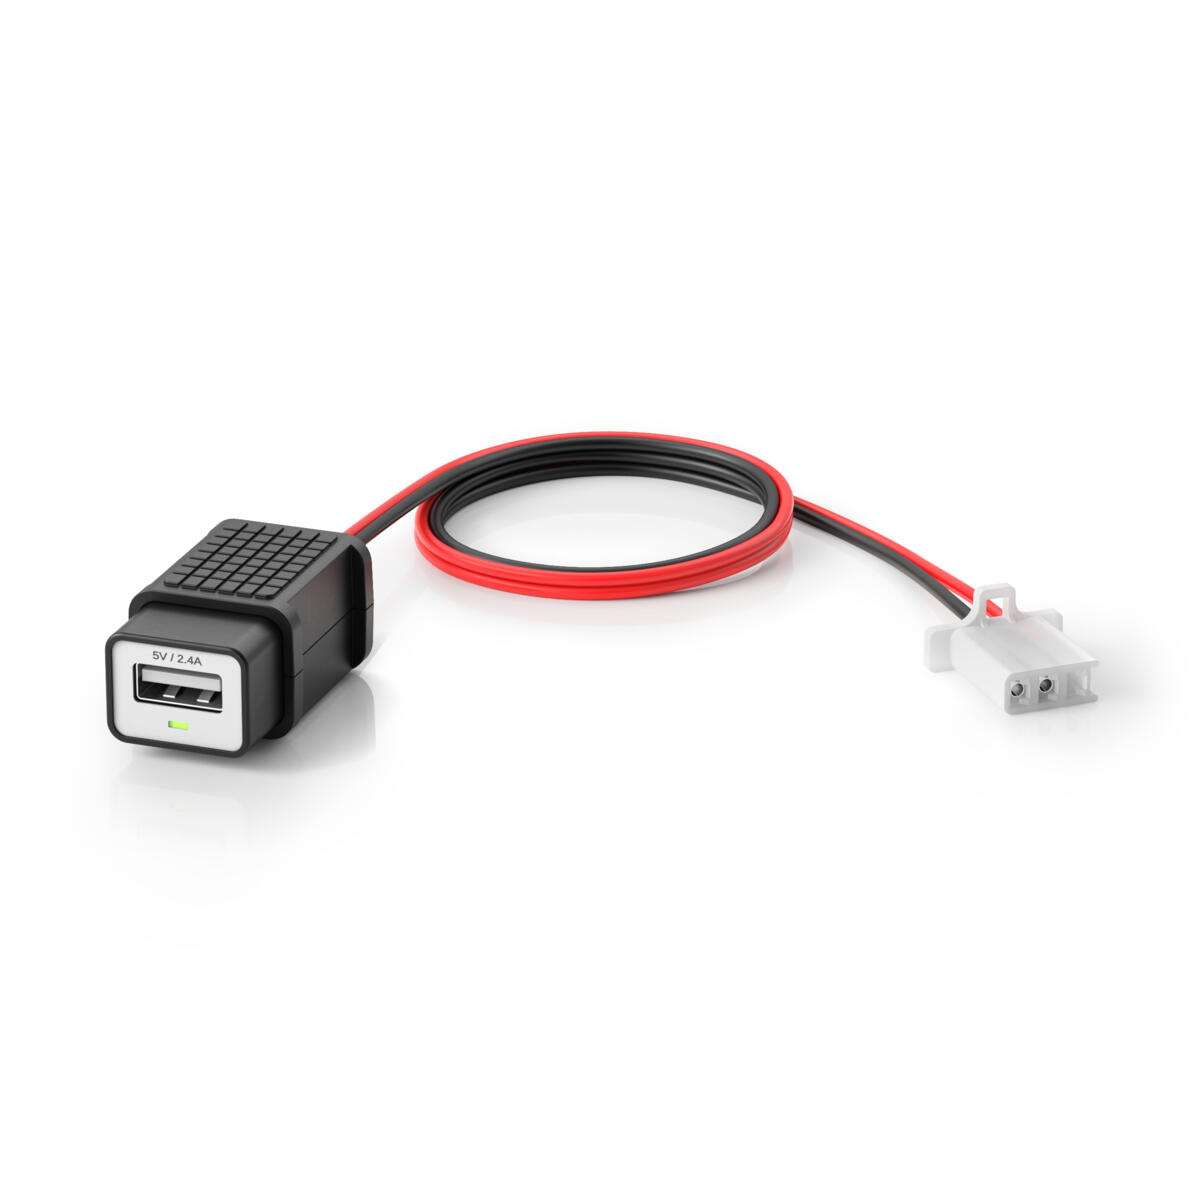 Kit de saída de 5 V via USB para unidades pré-instaladas